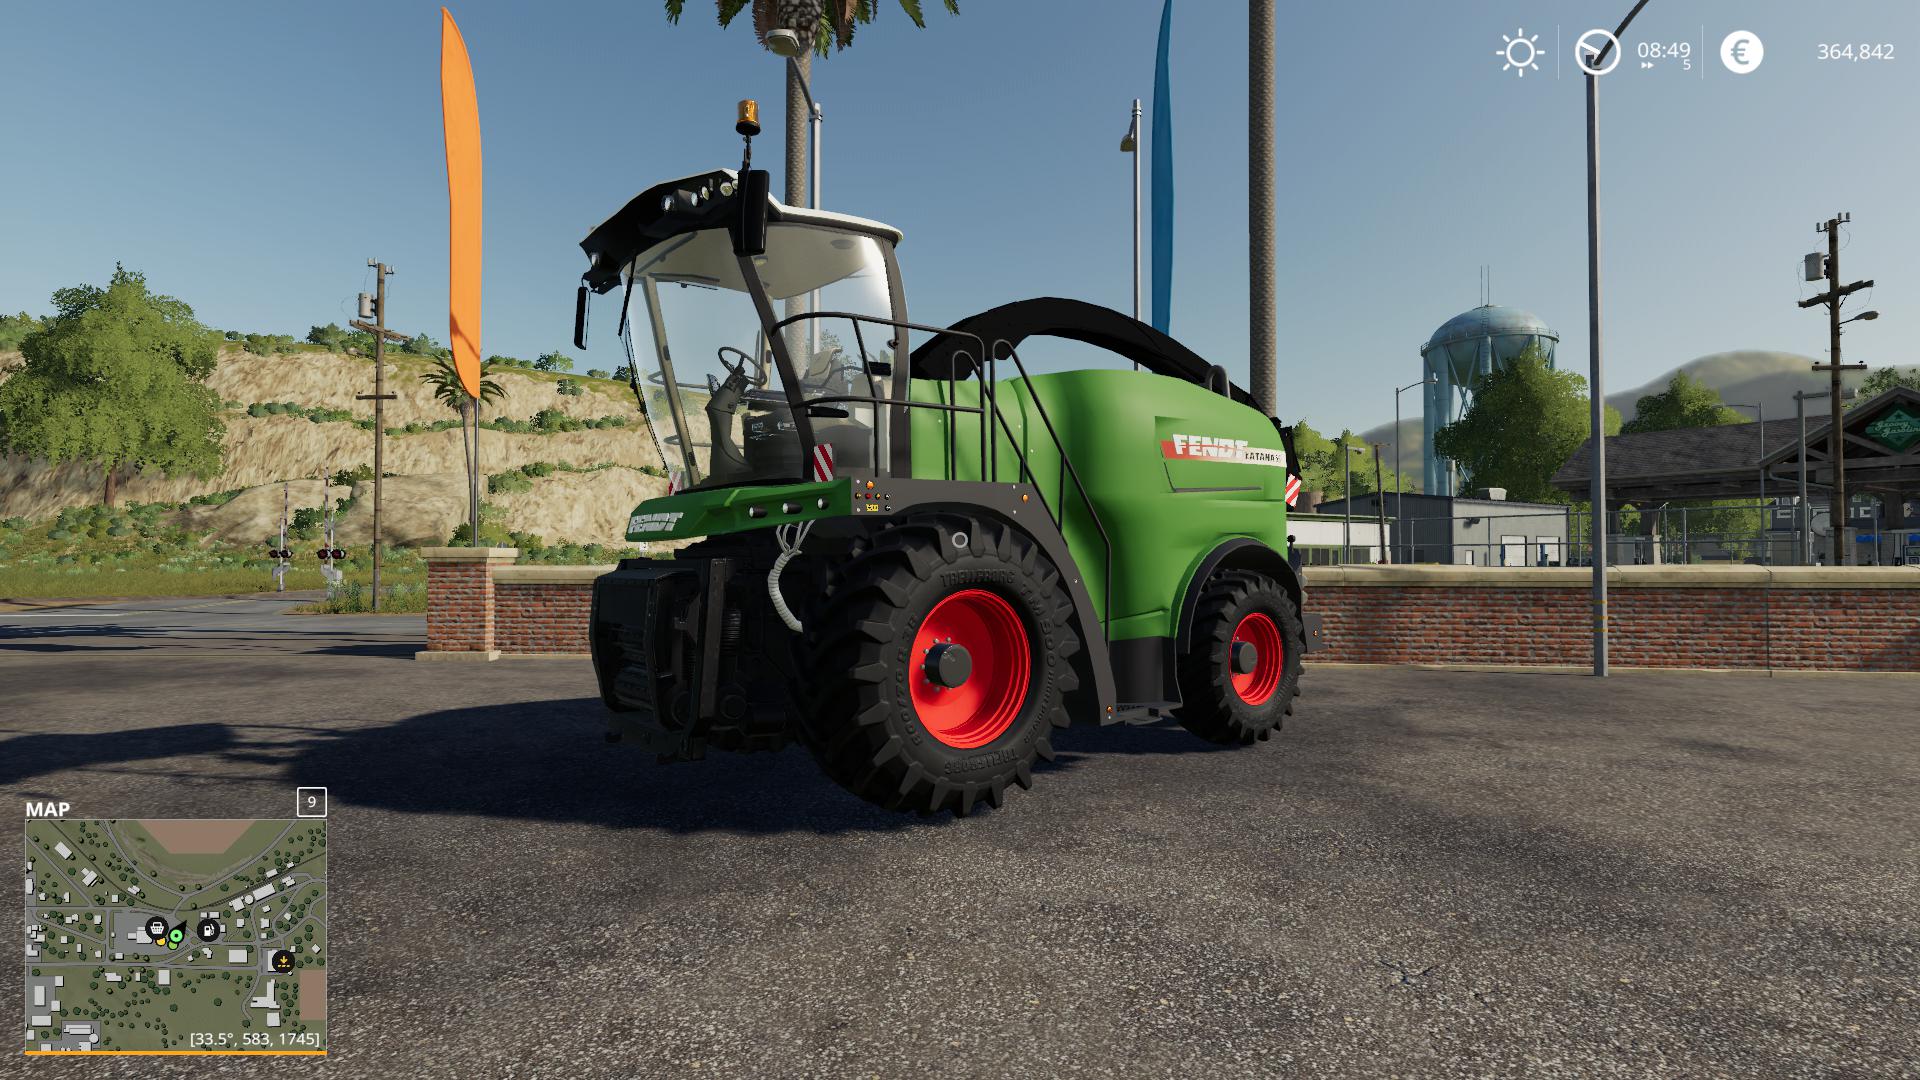 Fendt Katana V1 0 Fs19 Mods Farming Simulator 19 Mods